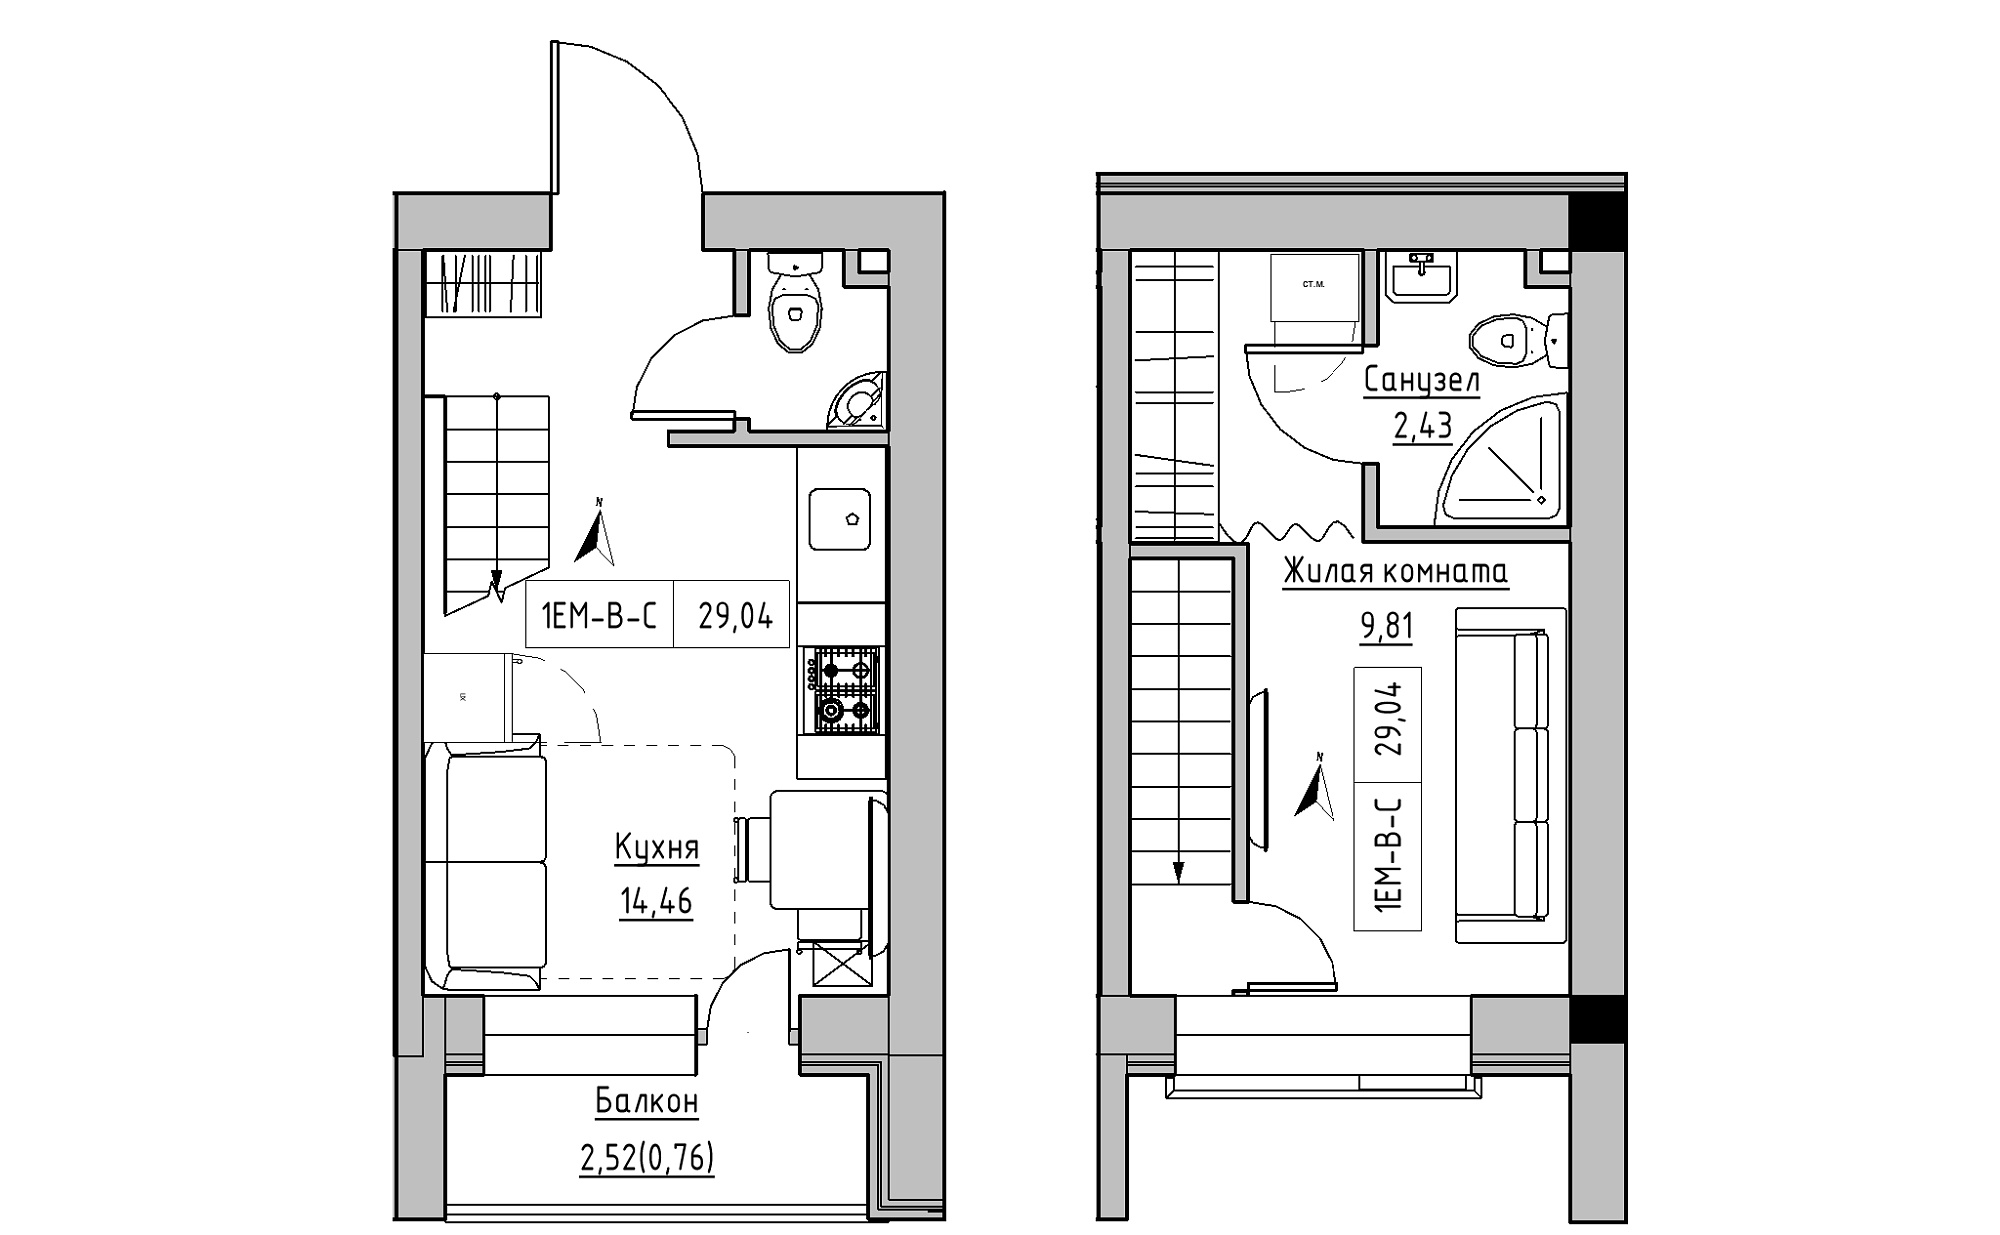 Planning 2-lvl flats area 29.04m2, KS-023-05/0013.